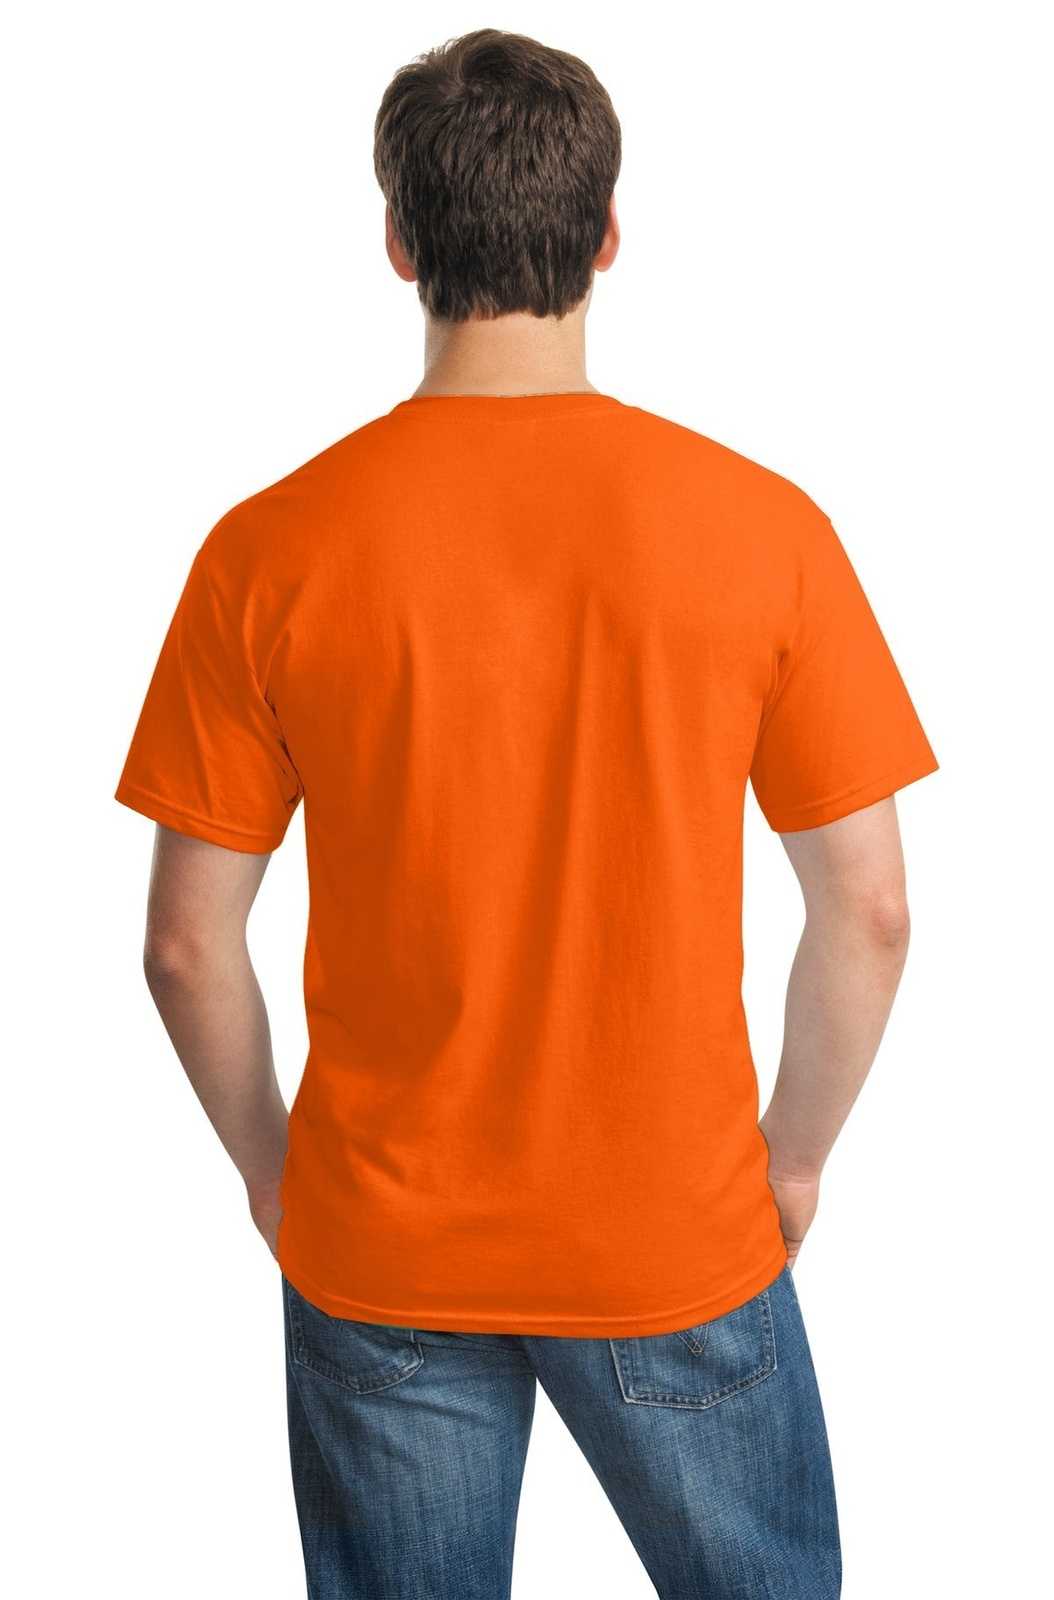 Gildan 5000 Heavy Cotton 100% Cotton T-Shirt - Orange - HIT a Double